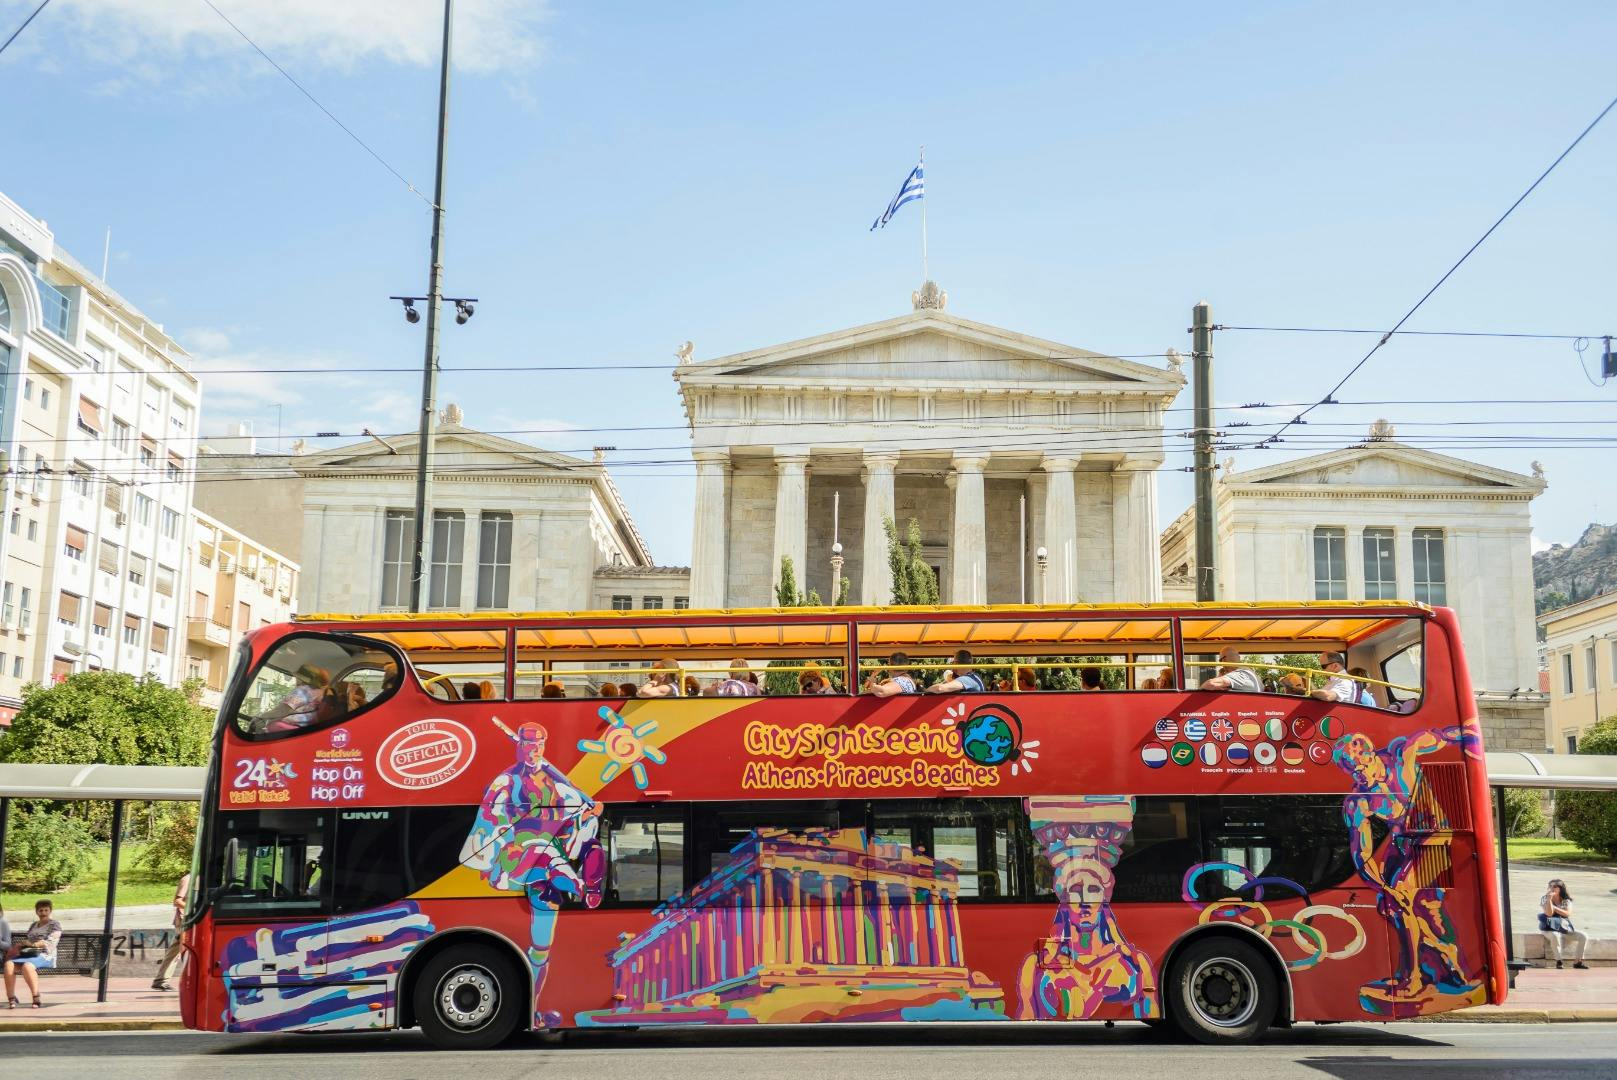 Excursão turística em ônibus panorâmico pela cidade de Atenas